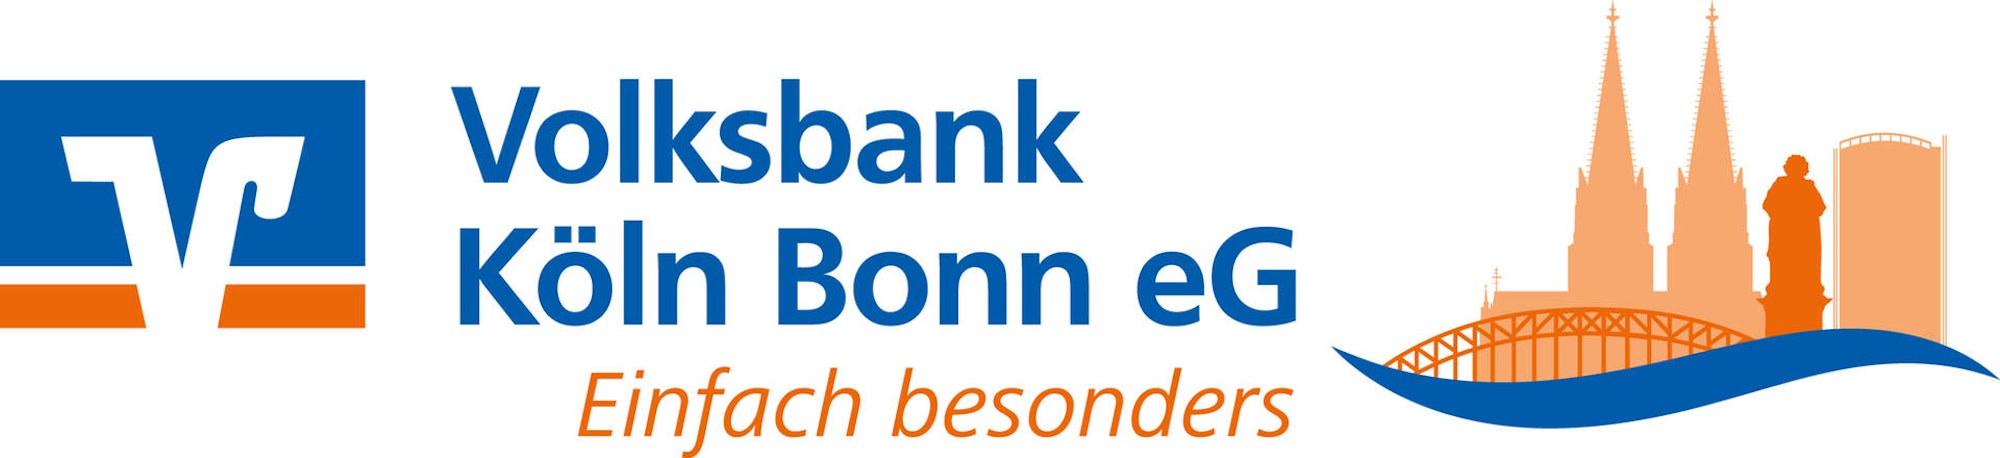 Logo Volksbank hochauflösend